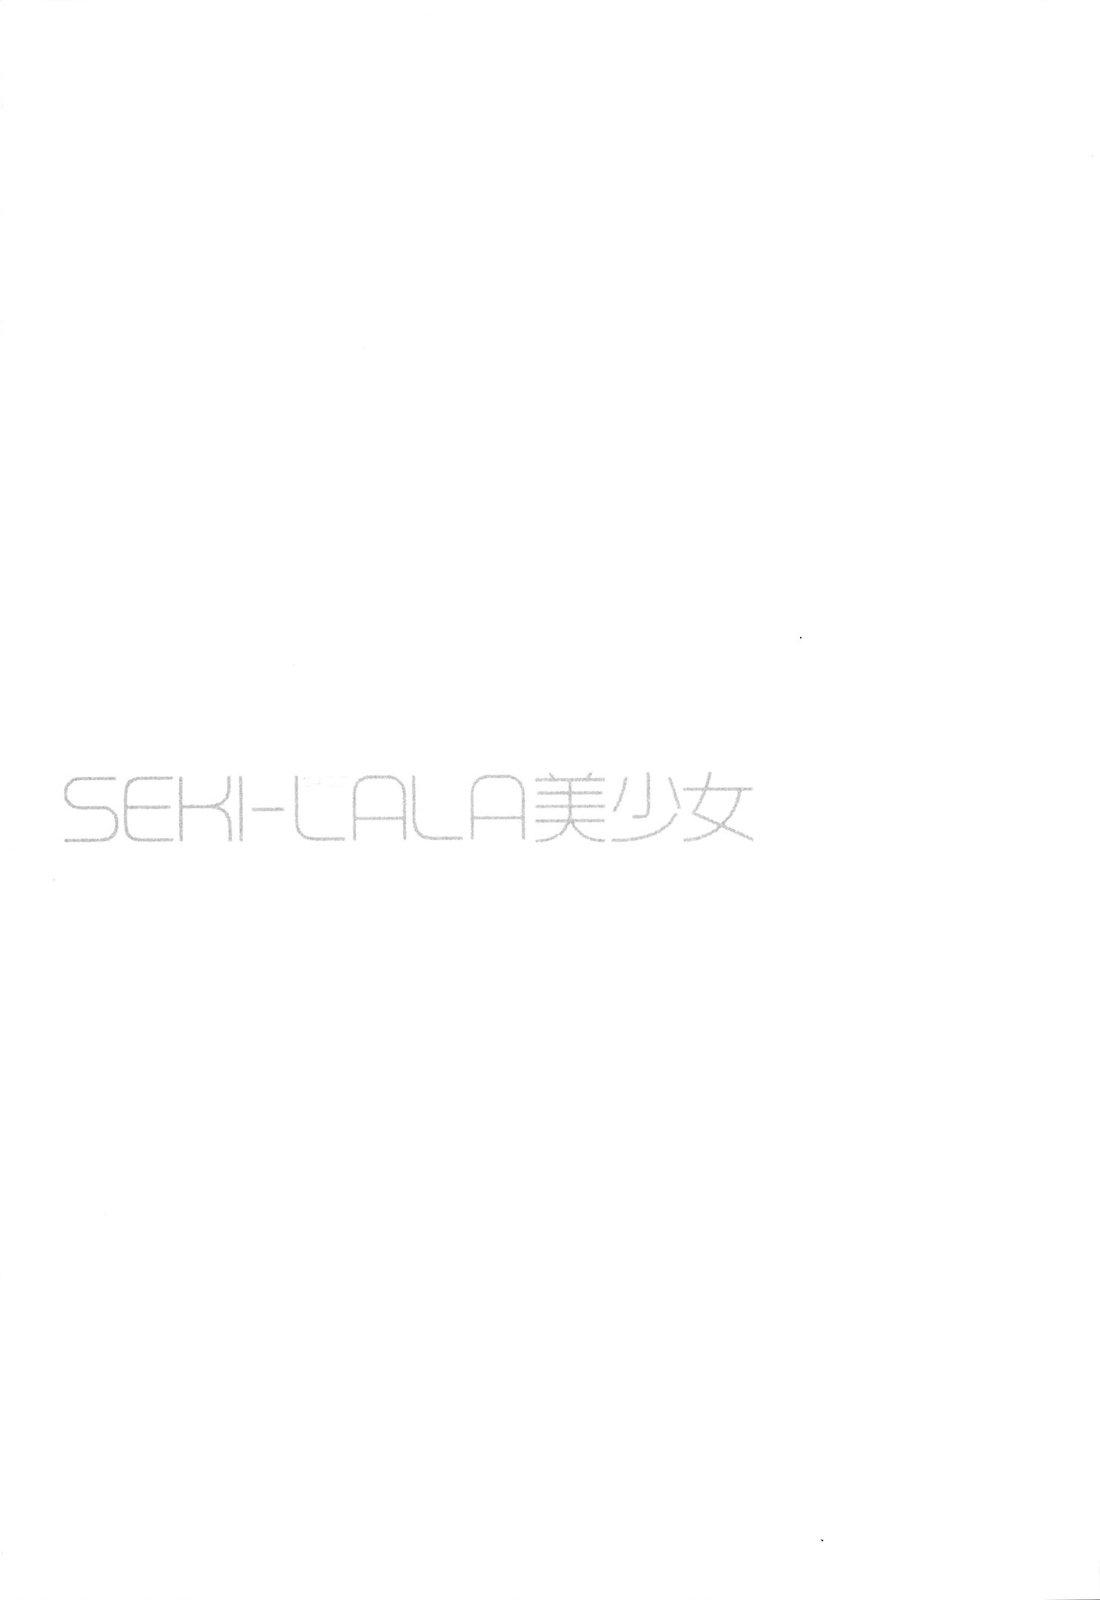 SEKI-LALA Bishoujo 71